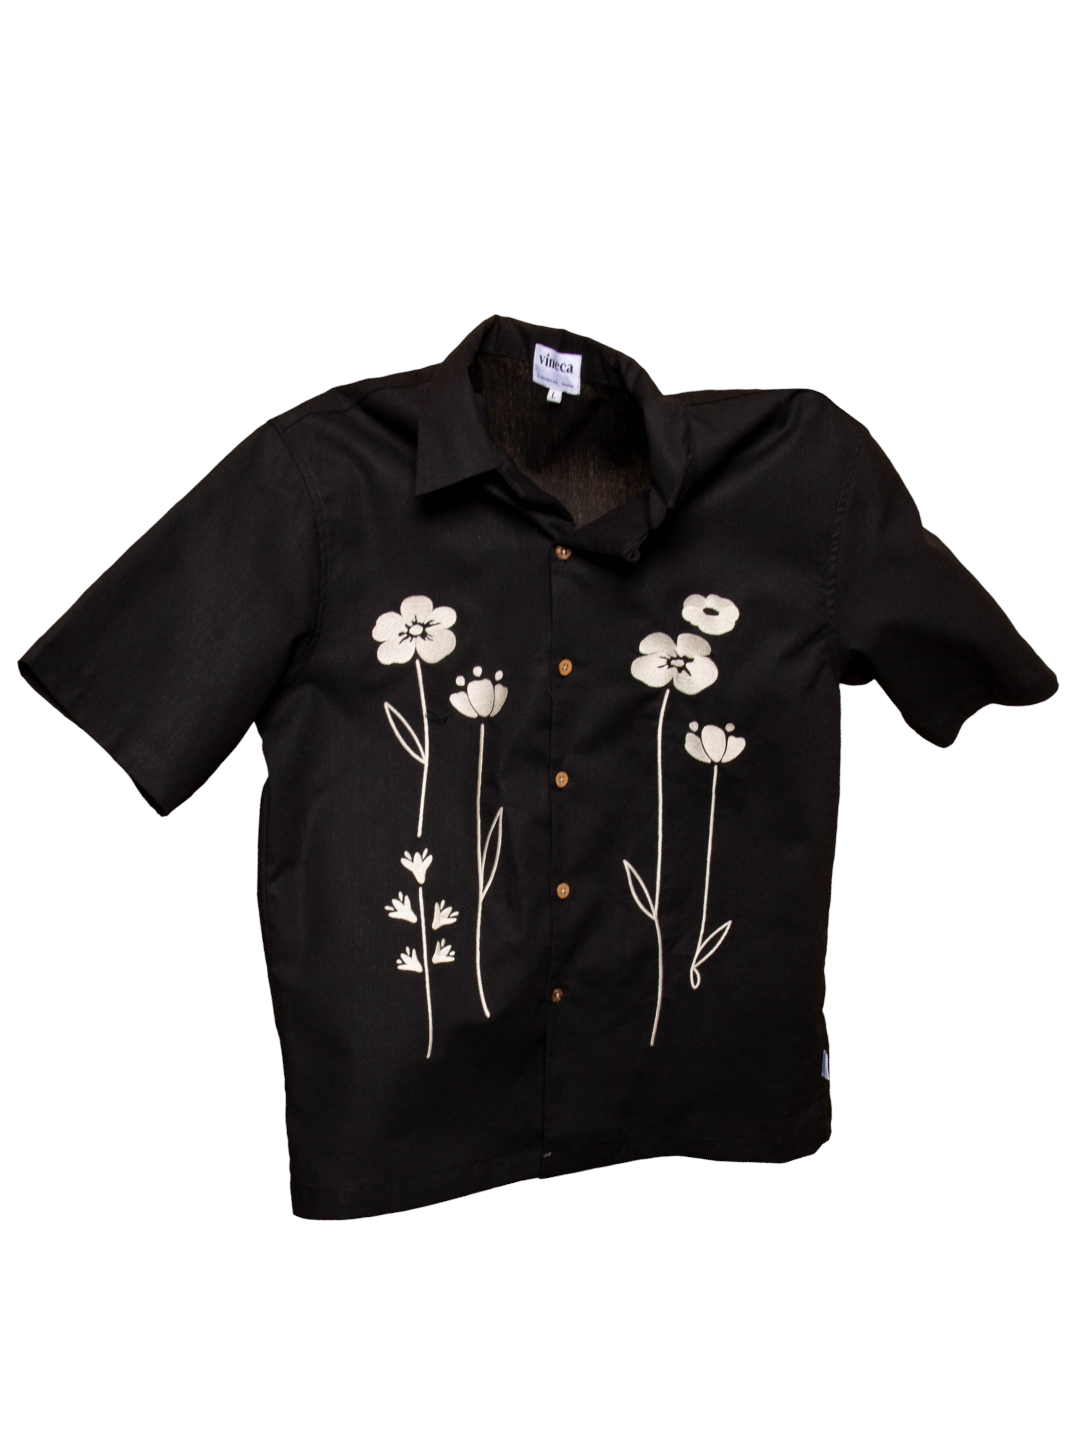 Vineca La Fleur Shirt (Black)